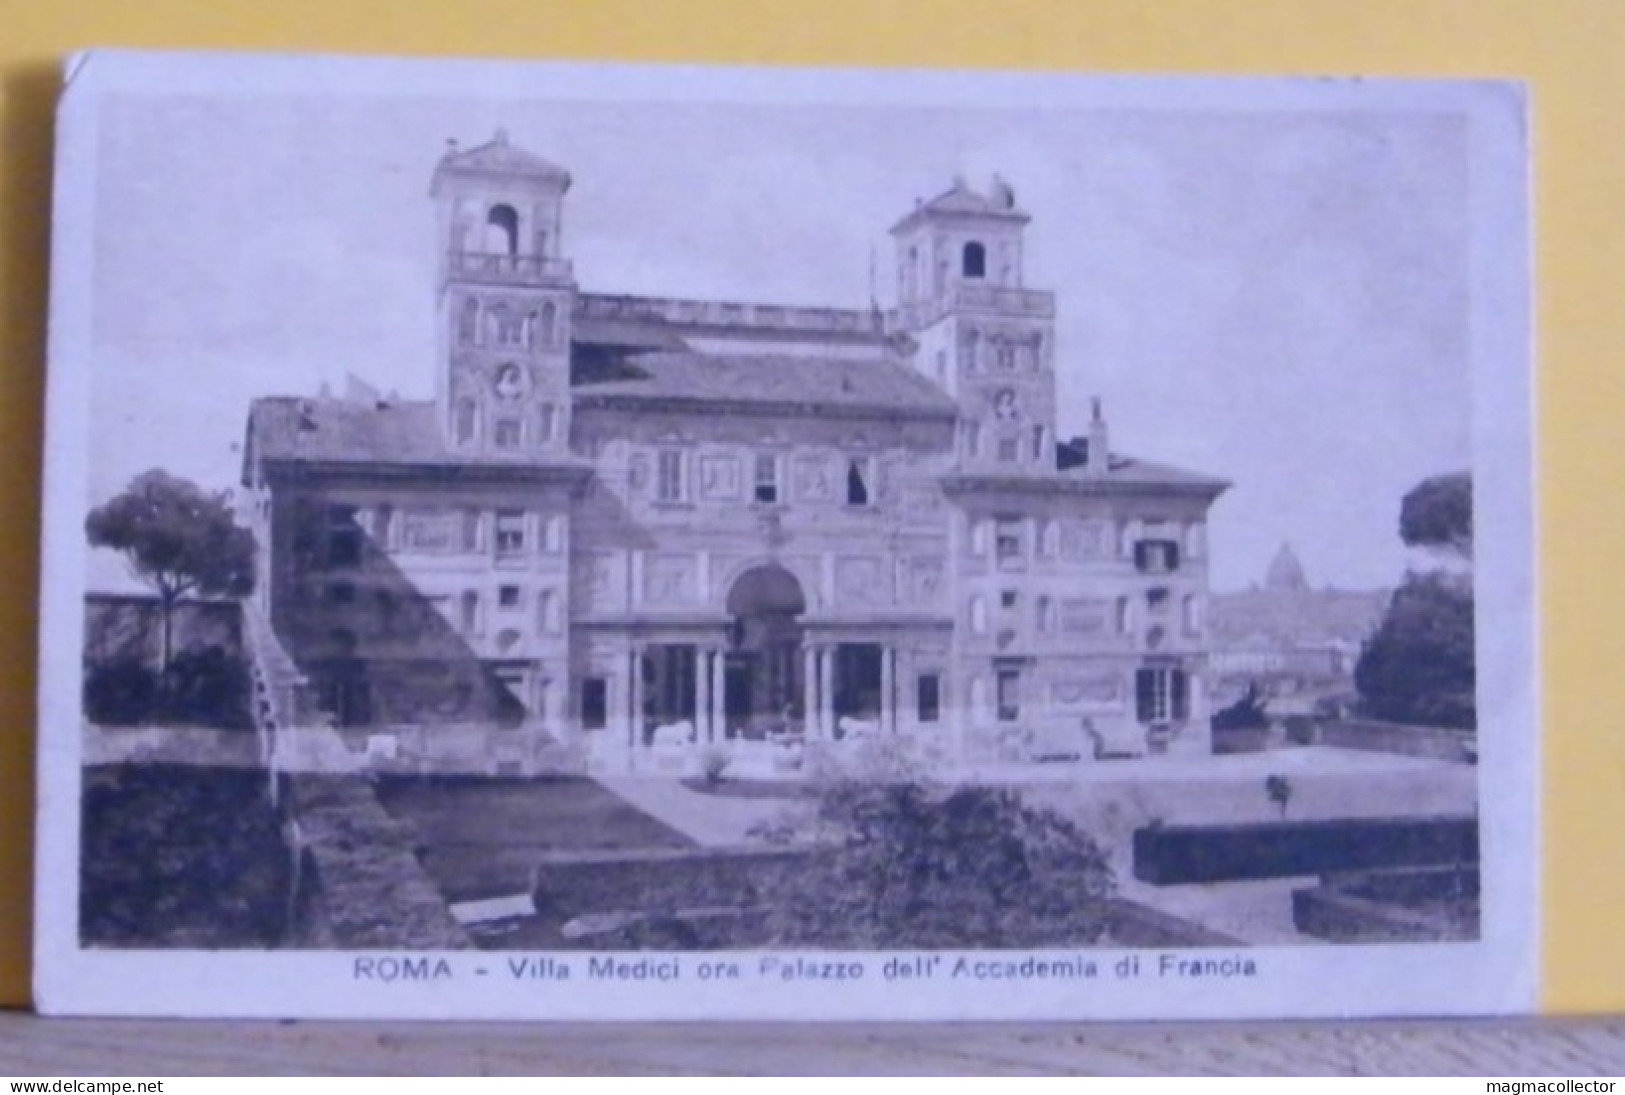 (ROM3) ROMA - VILLA MEDICI ORA PALAZZO DELL' ACCADEMIA FRANCIA - VIAGGIATA 1919 - Other Monuments & Buildings